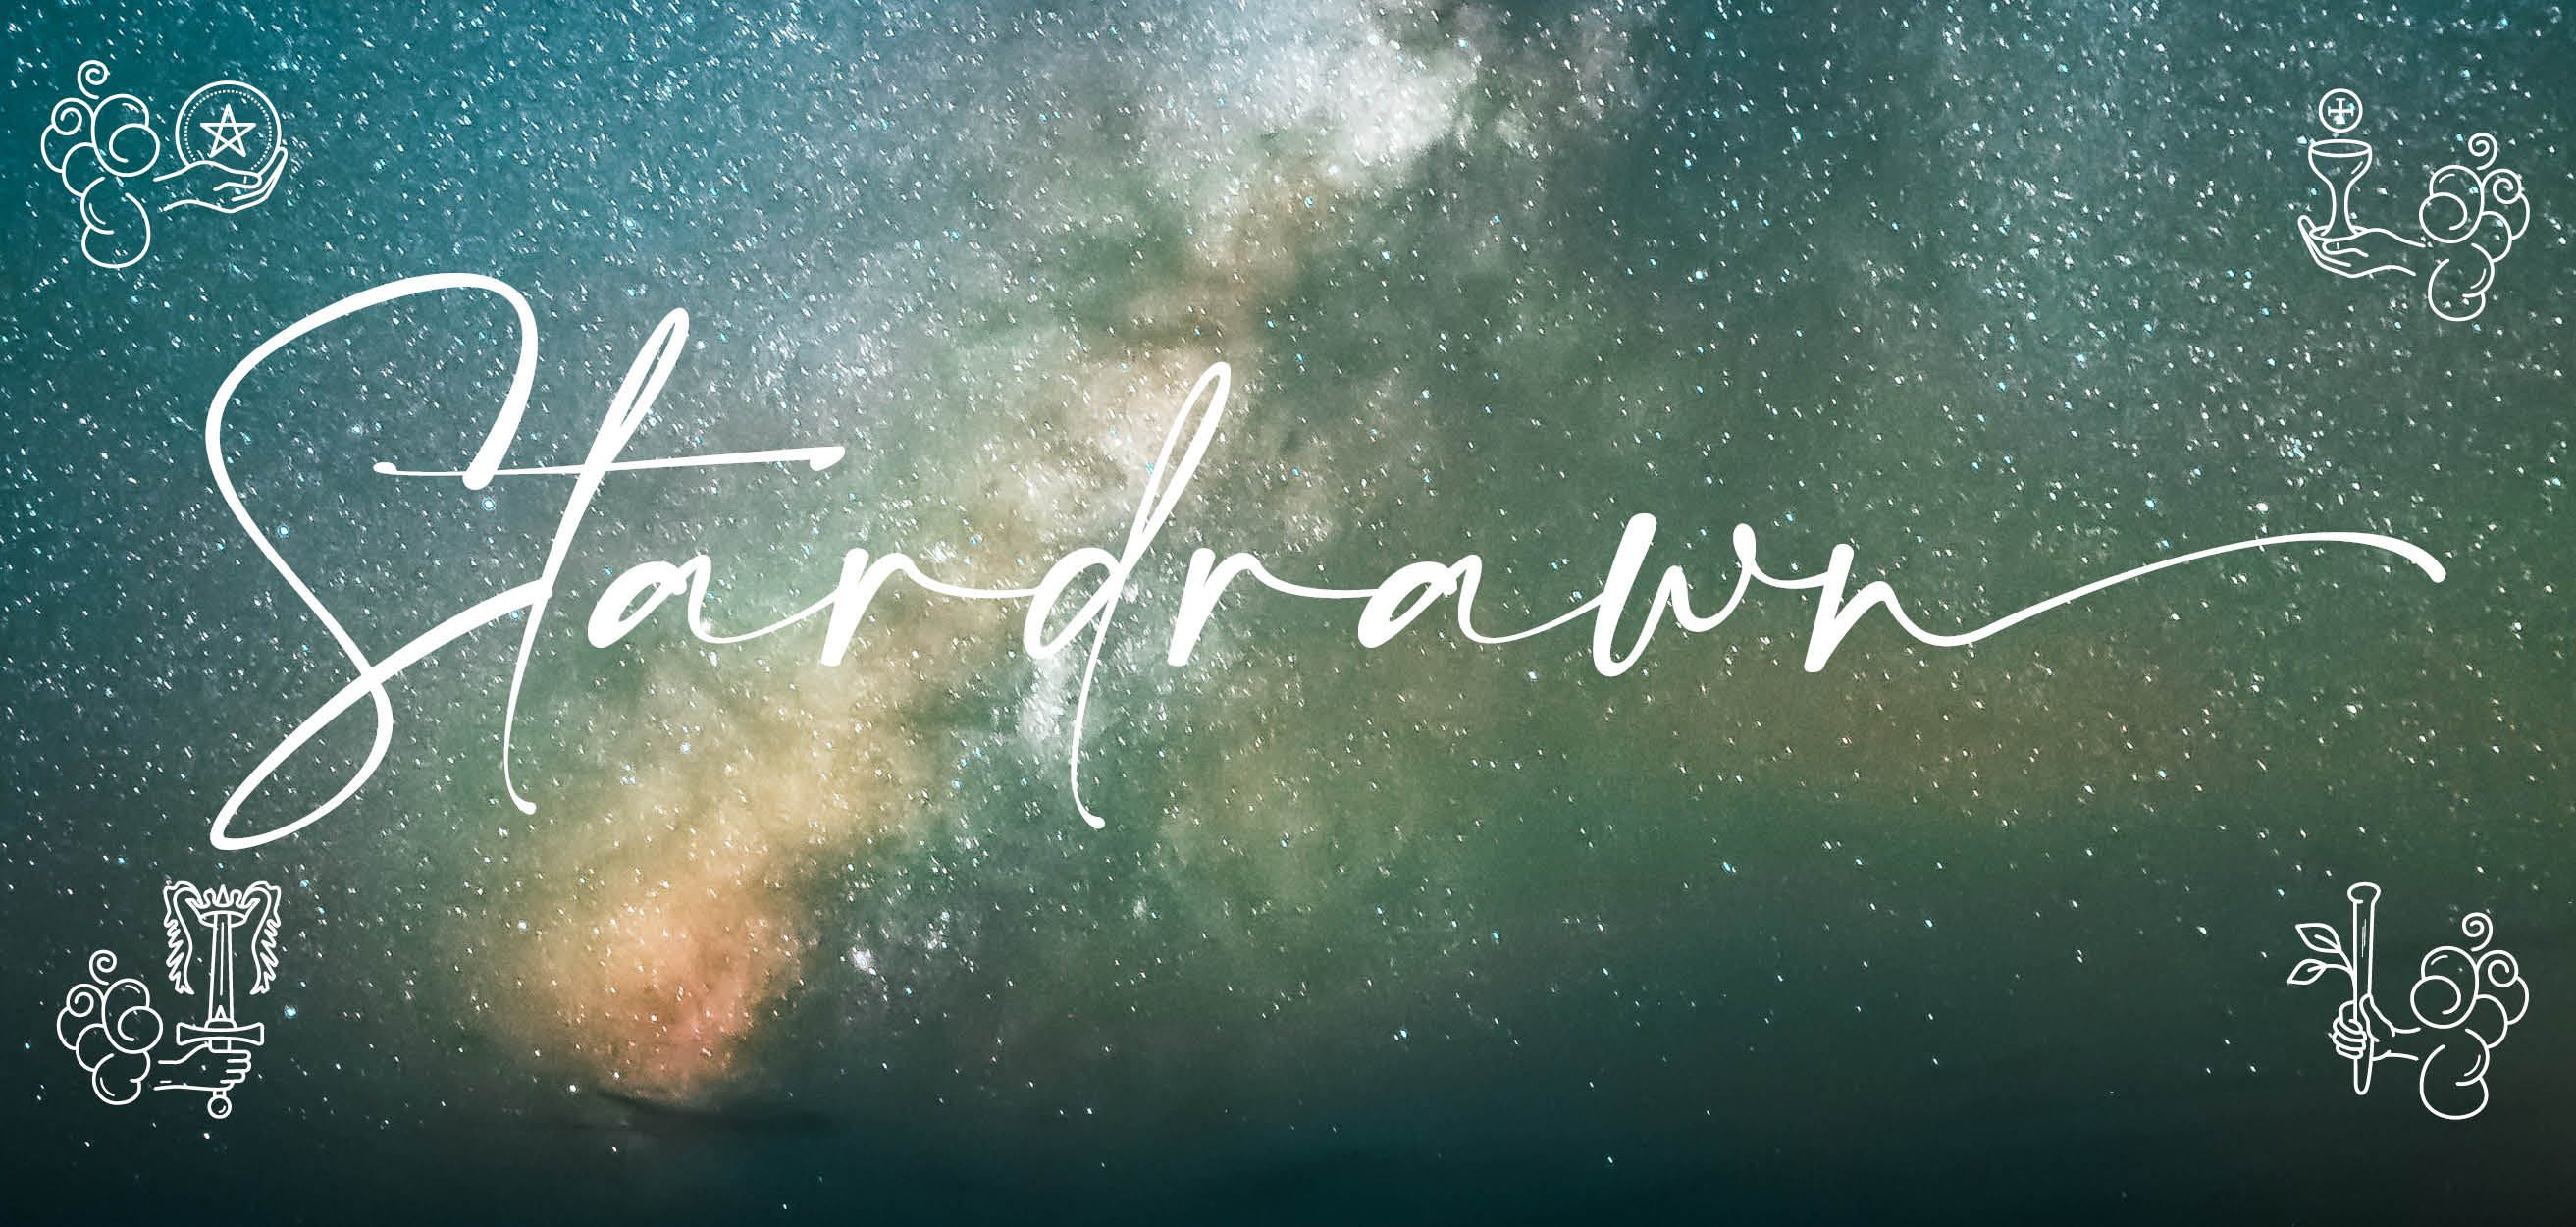 Stardrawn